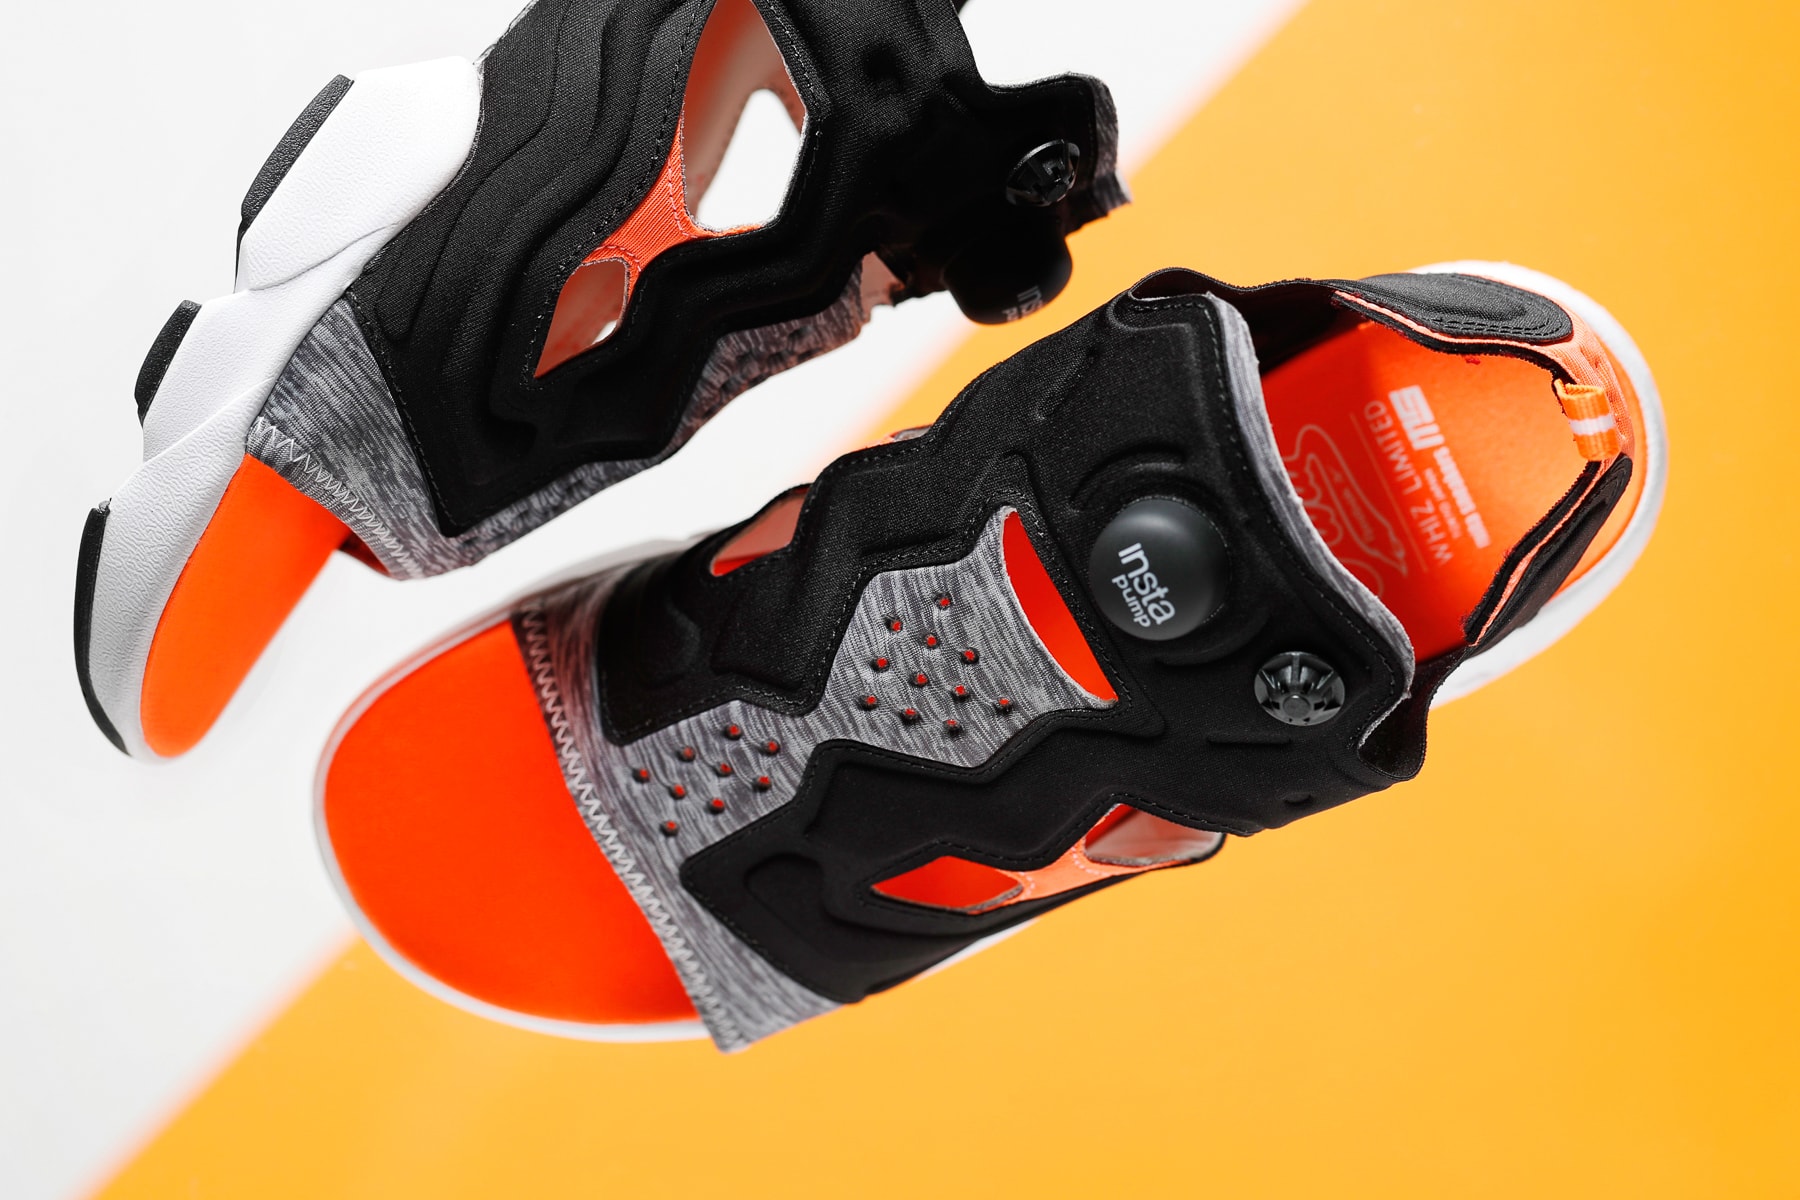 mita sneakers x WHIZ LIMITED の名タッグより Instapump Fury Sandal が登場 ハイテクスニーカーのDNAと抜群の履き心地を継承した夏のストリートに映える逸品